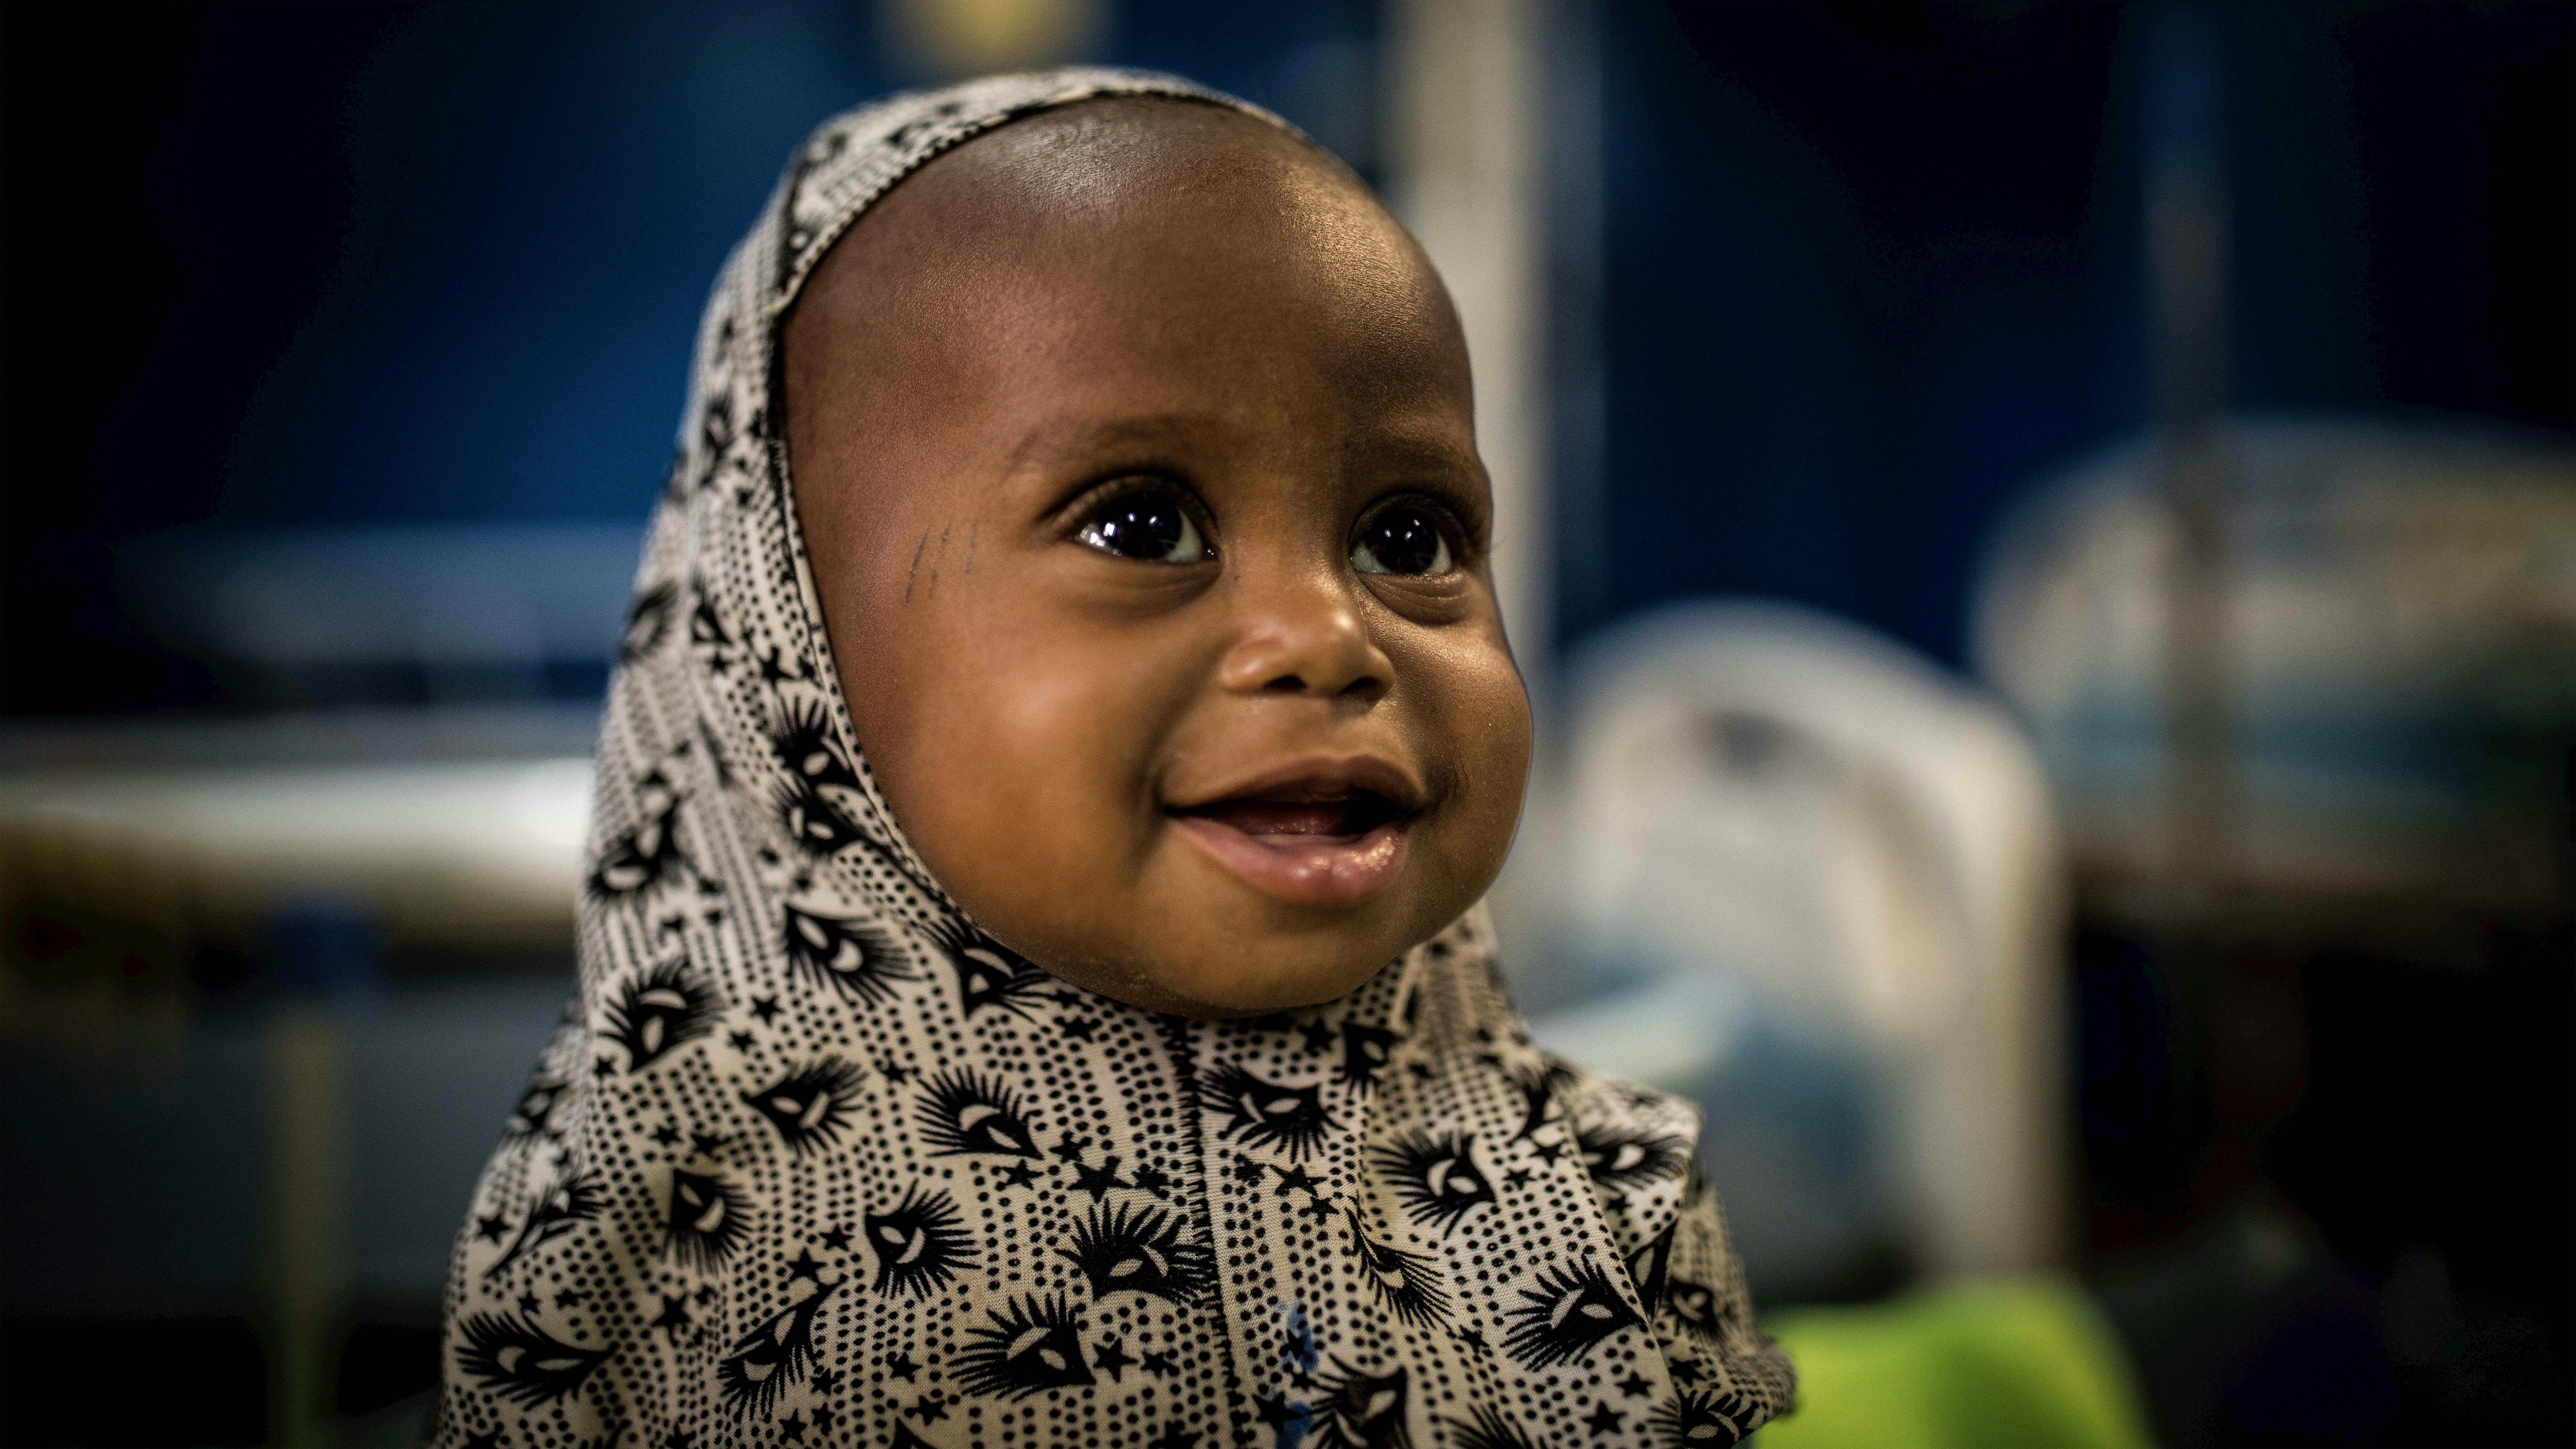 Mali - Maya Ag Oumar, 12 mesi, con una  grave malnutrizione acuta, è stata portata da sua madre all'ospedale di Timbuktu dopo aver percorso 135 chilometri dalla loro città 